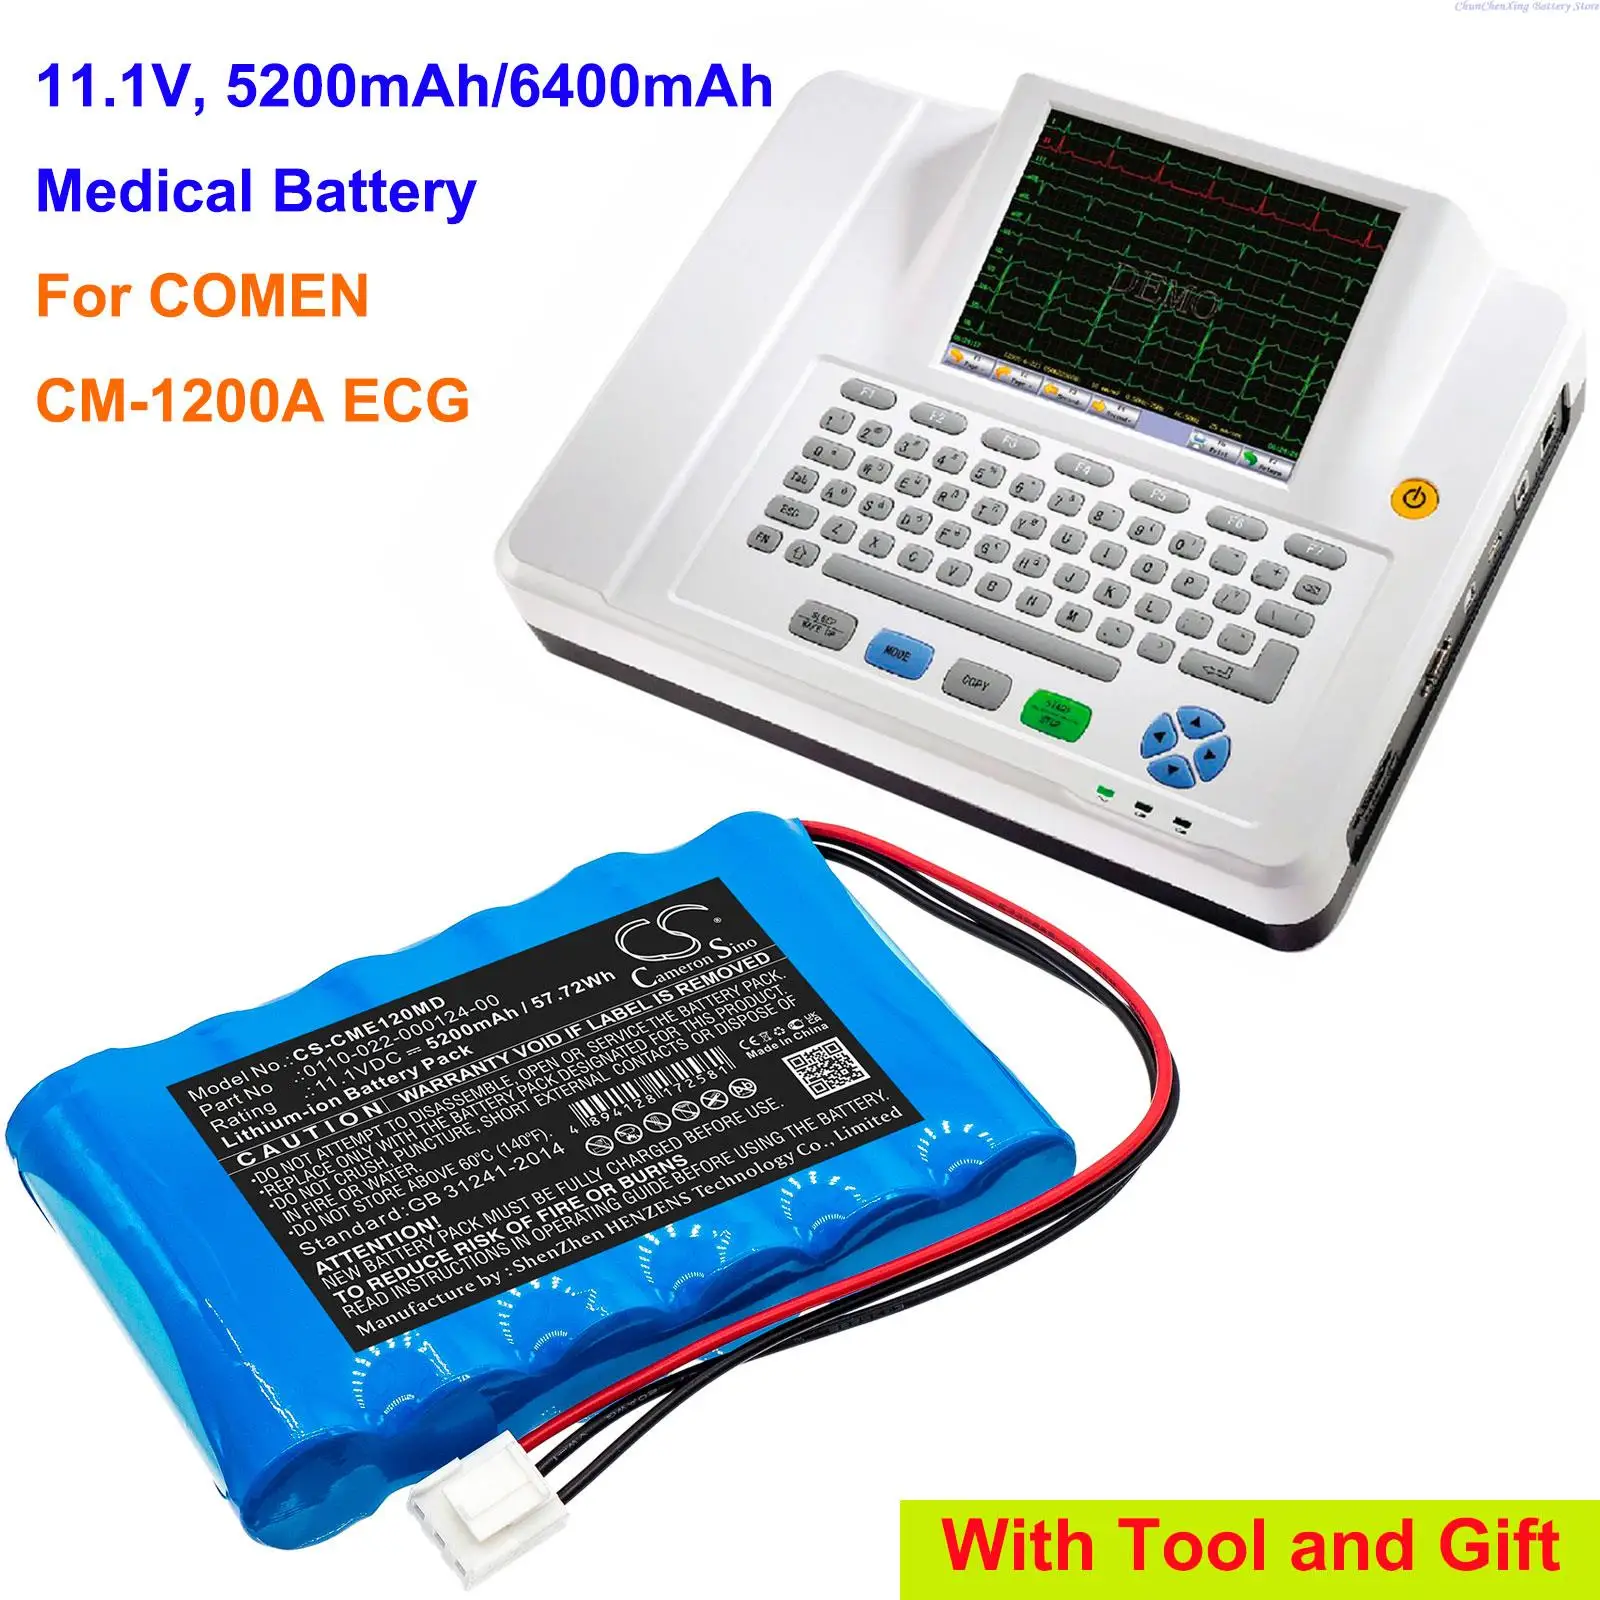 

Медицинский аккумулятор CS 5200 мА · ч/6400 мА · ч 0110-022-000124-00 для COMEN CM-1200A ECG, это 11,1 В и 6 ячеек